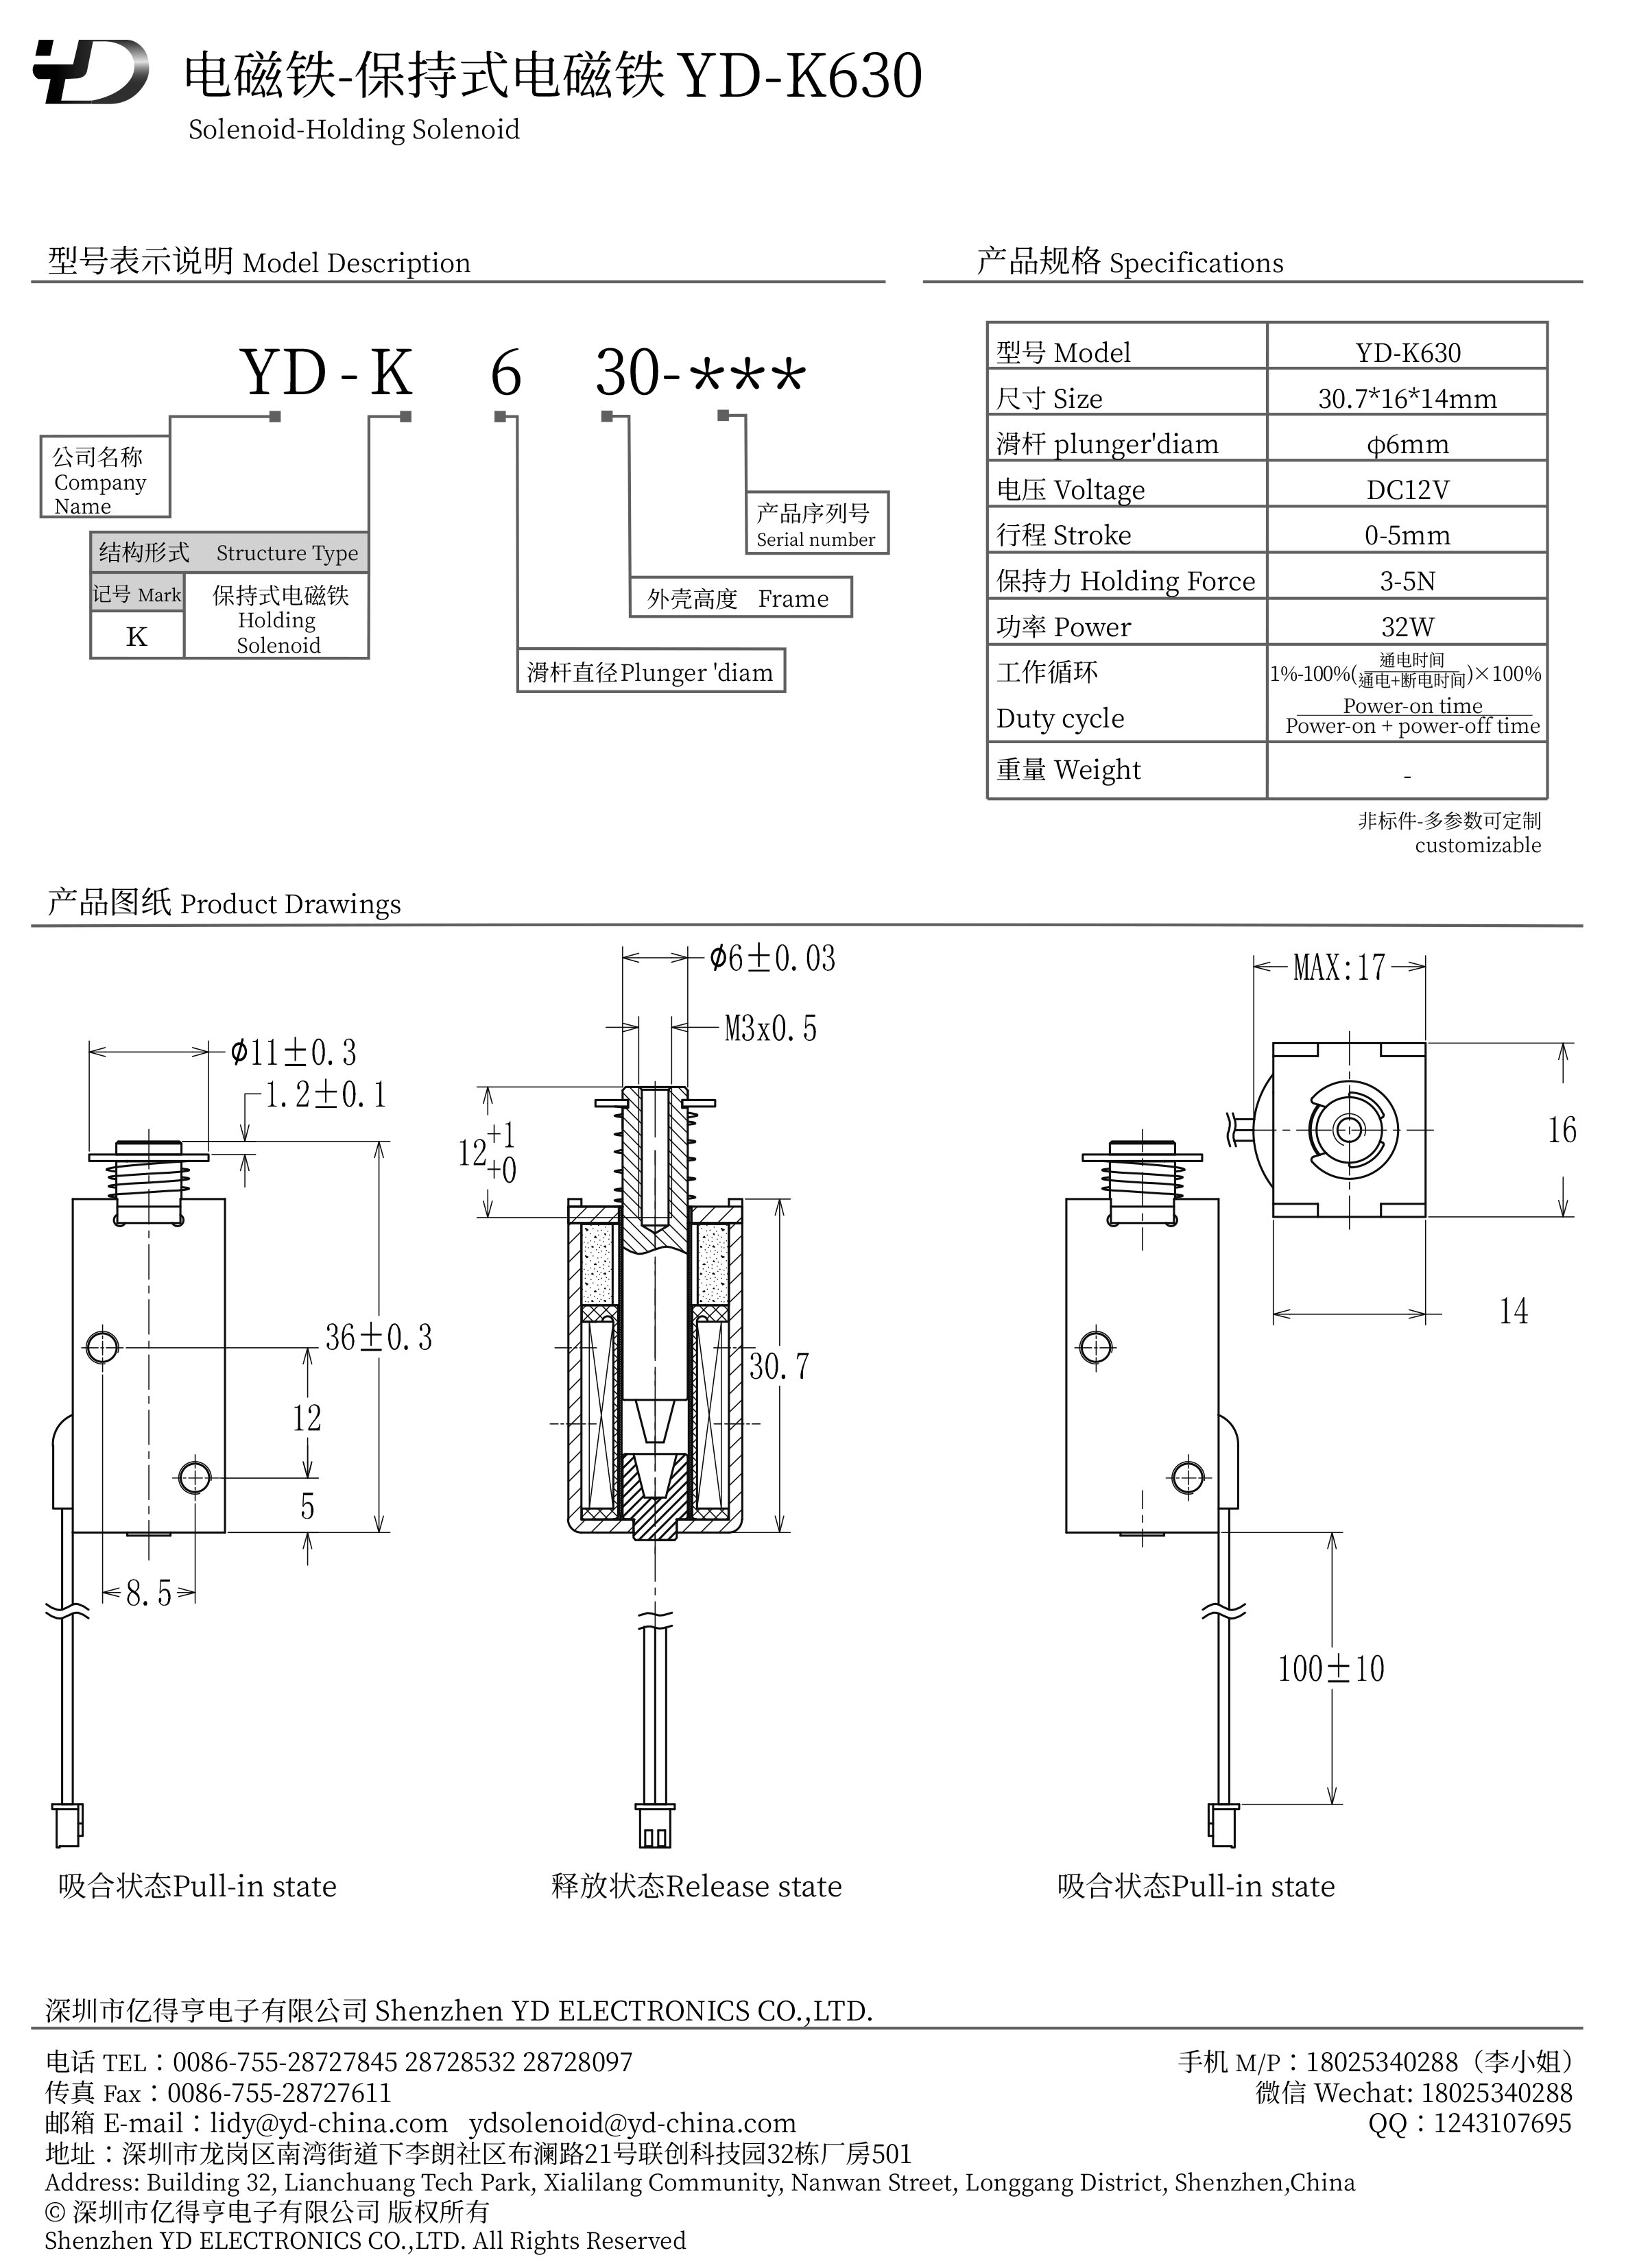 YD-K630-PDF.jpg